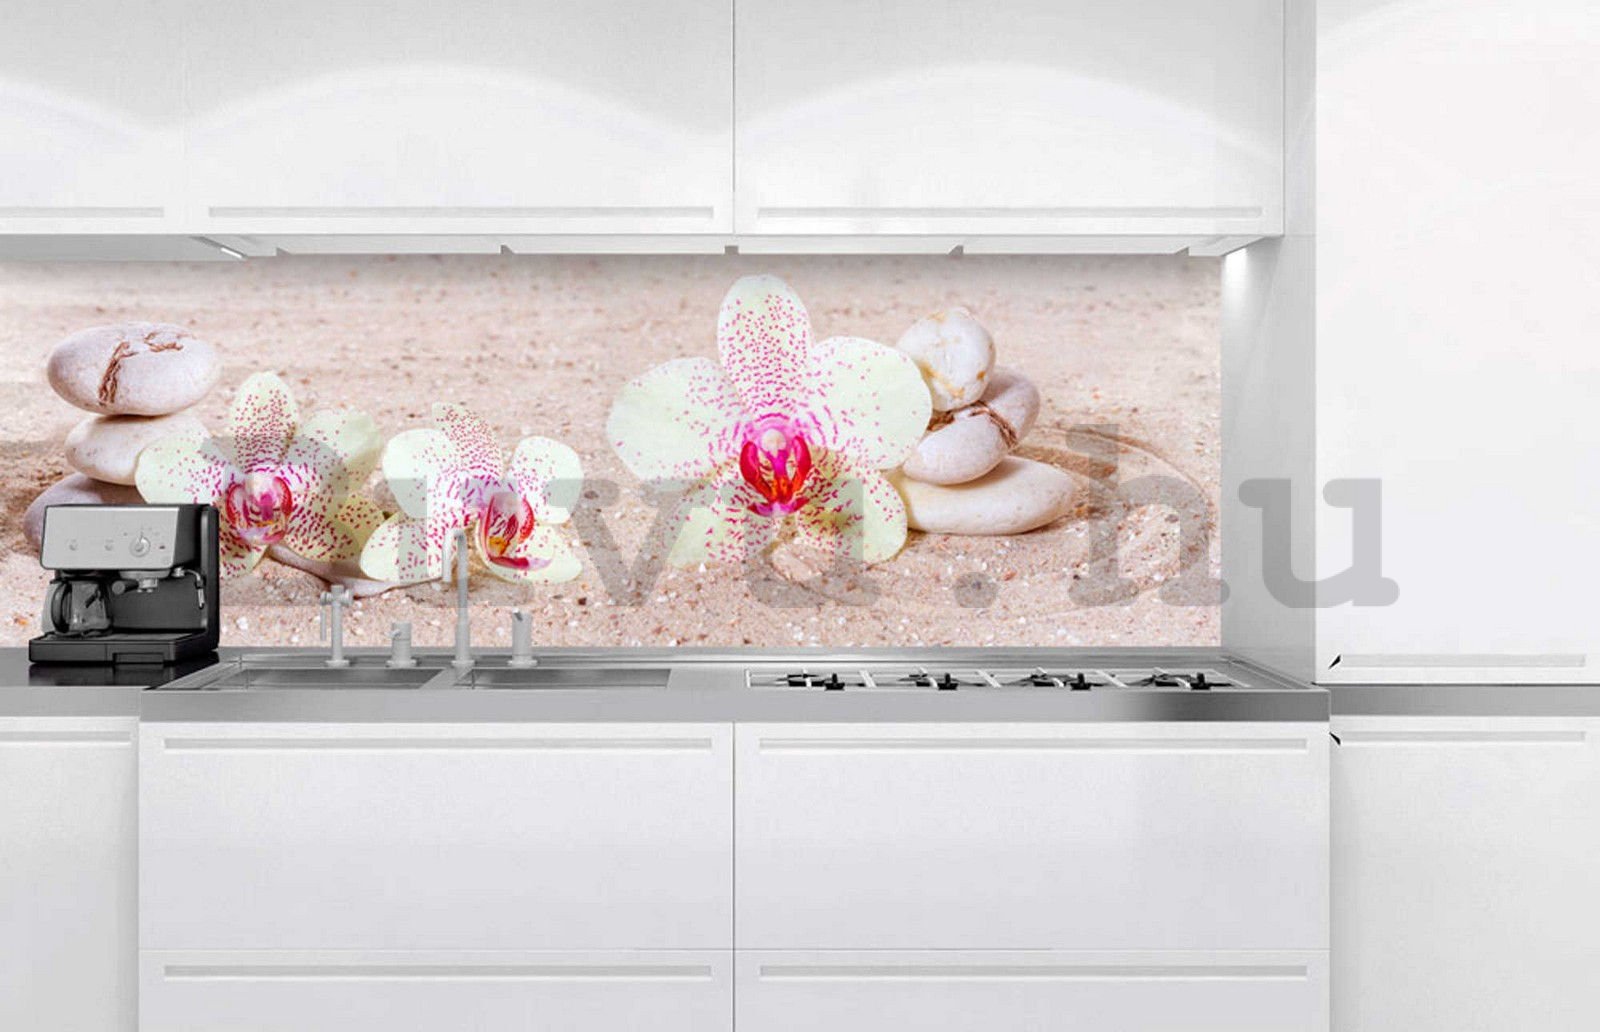 Öntapadós mosható tapéta konyhába - Zen kert, 180x60 cm